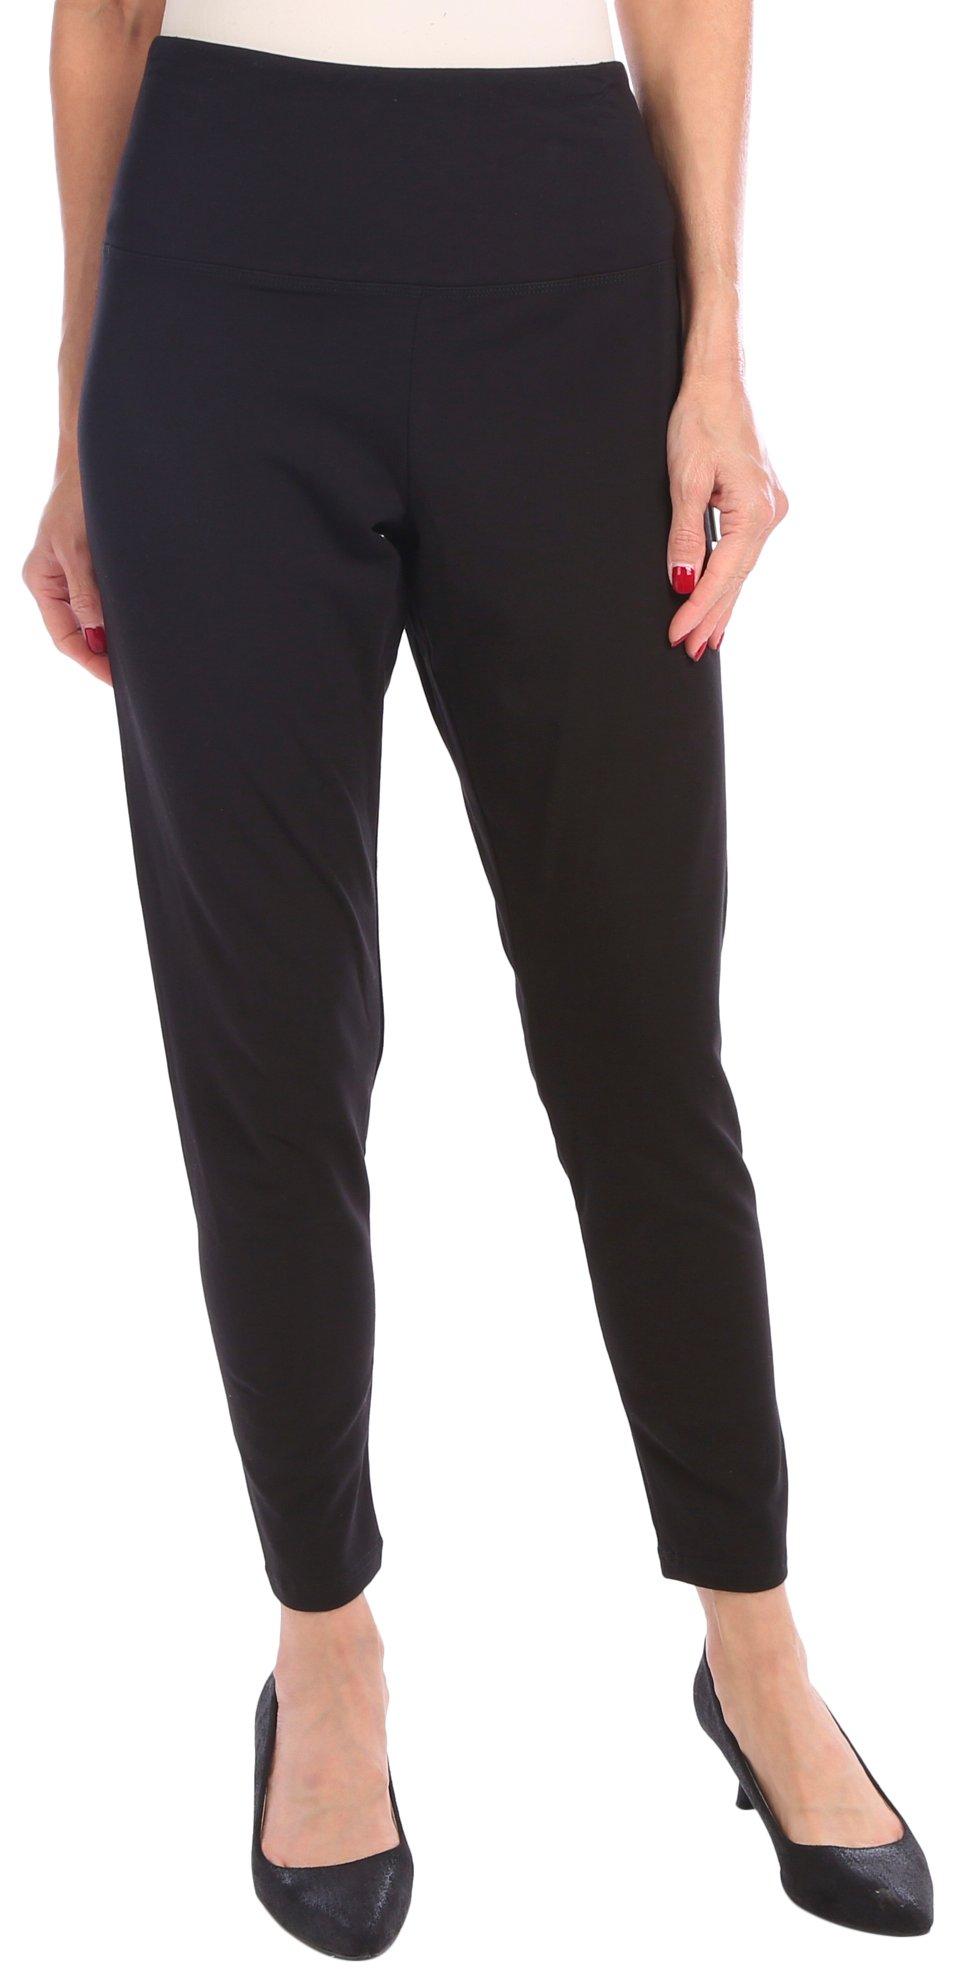 Suave' classic fit leggings. Grey/black 3x